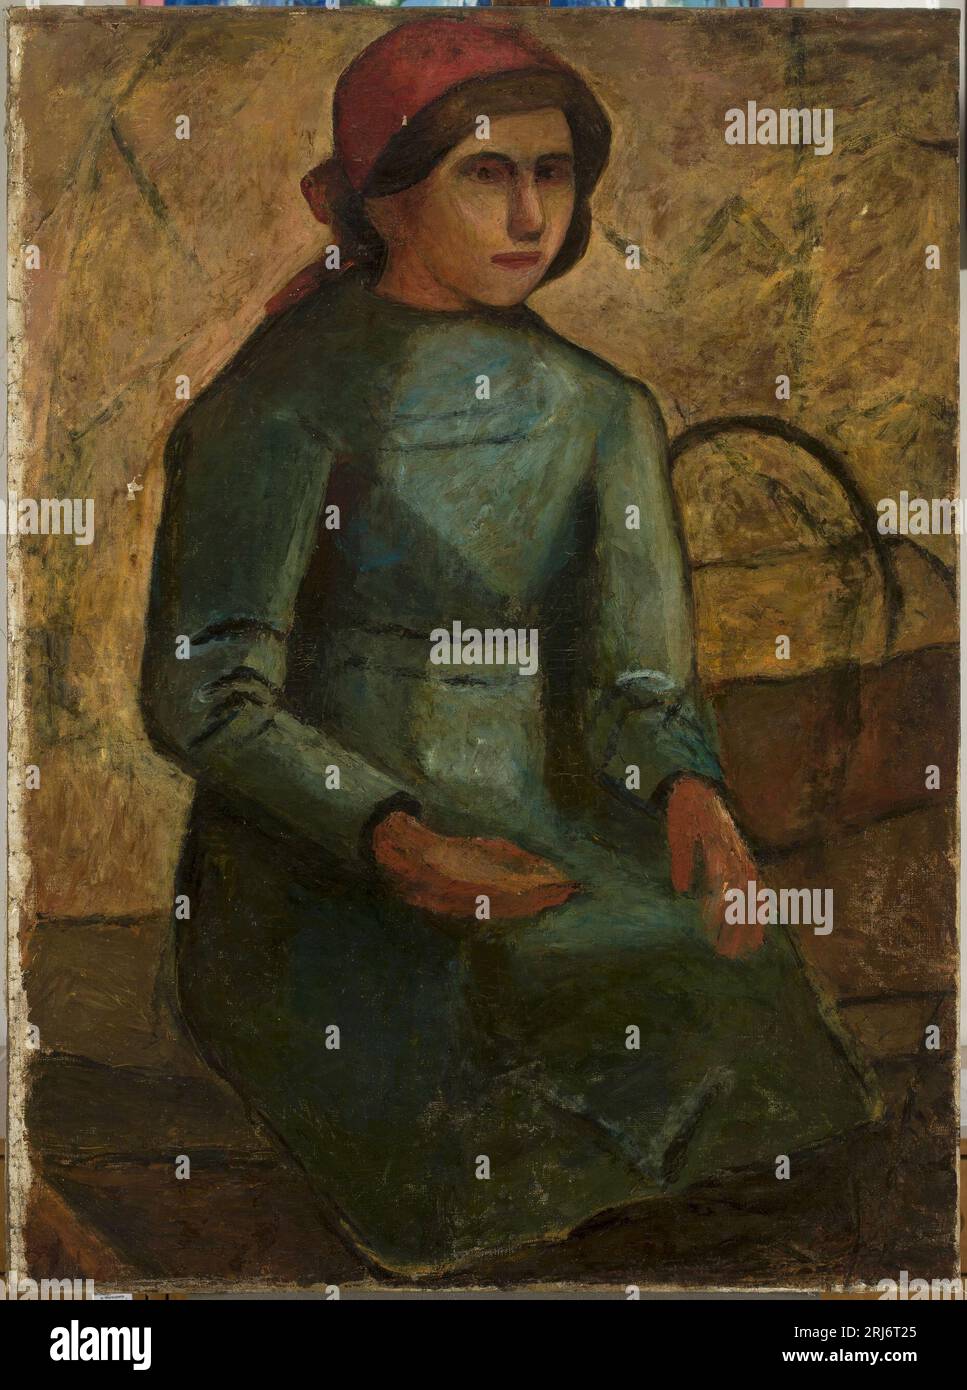 Dziewczyna W zielonej sukni z koszykiem circa 1914 di Tadeusz Makowski Foto Stock